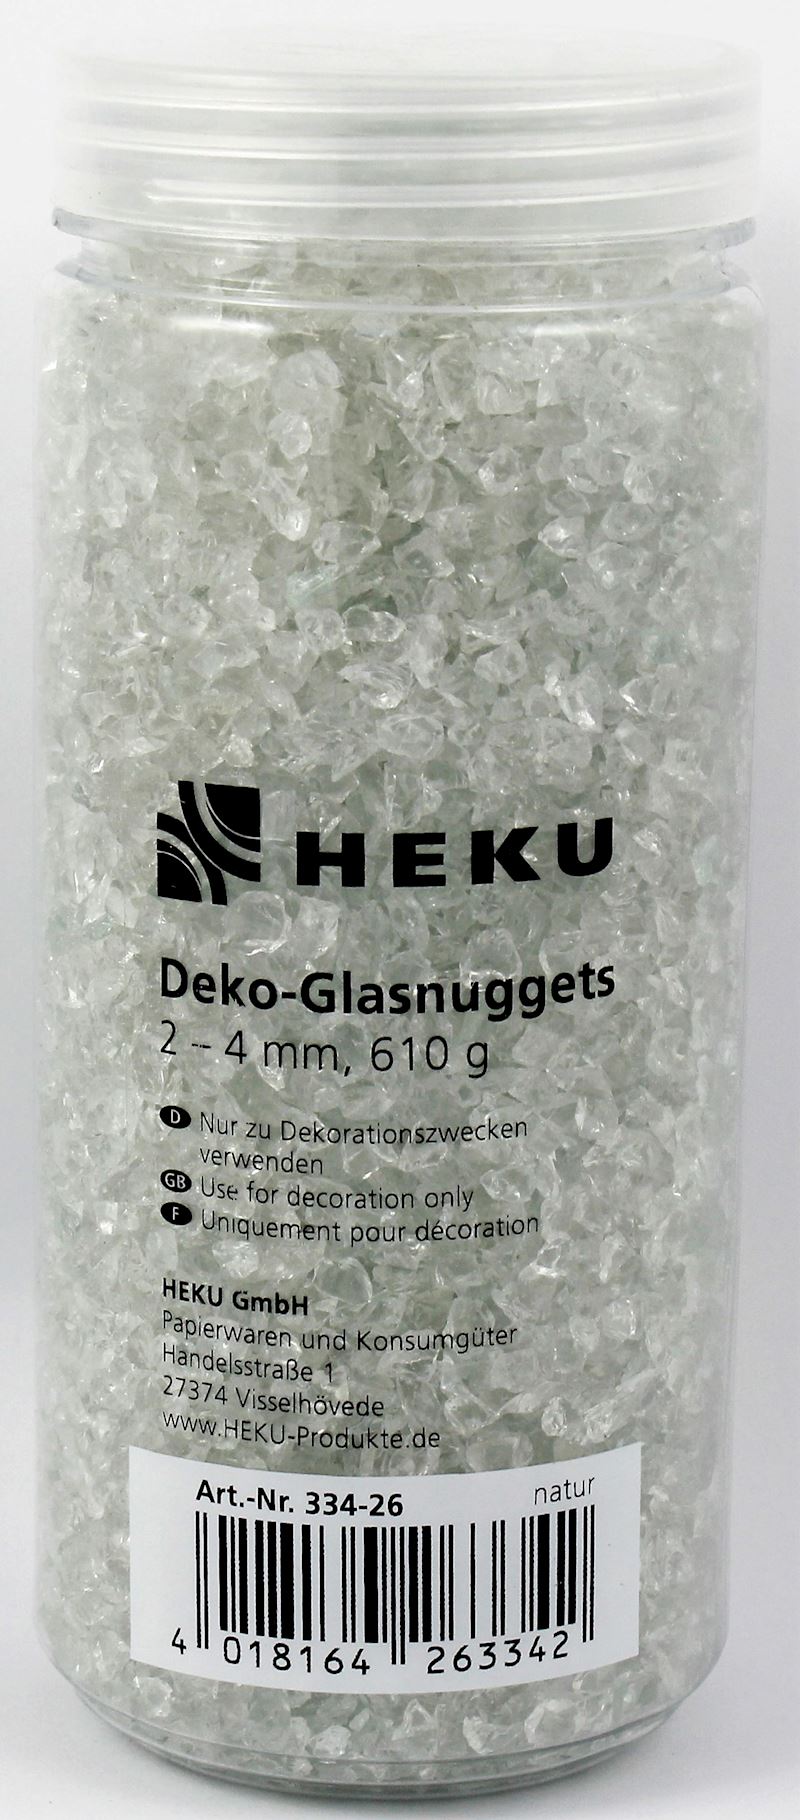 Deko-Glasnuggets in Dose 2-4mm, 610g, natur